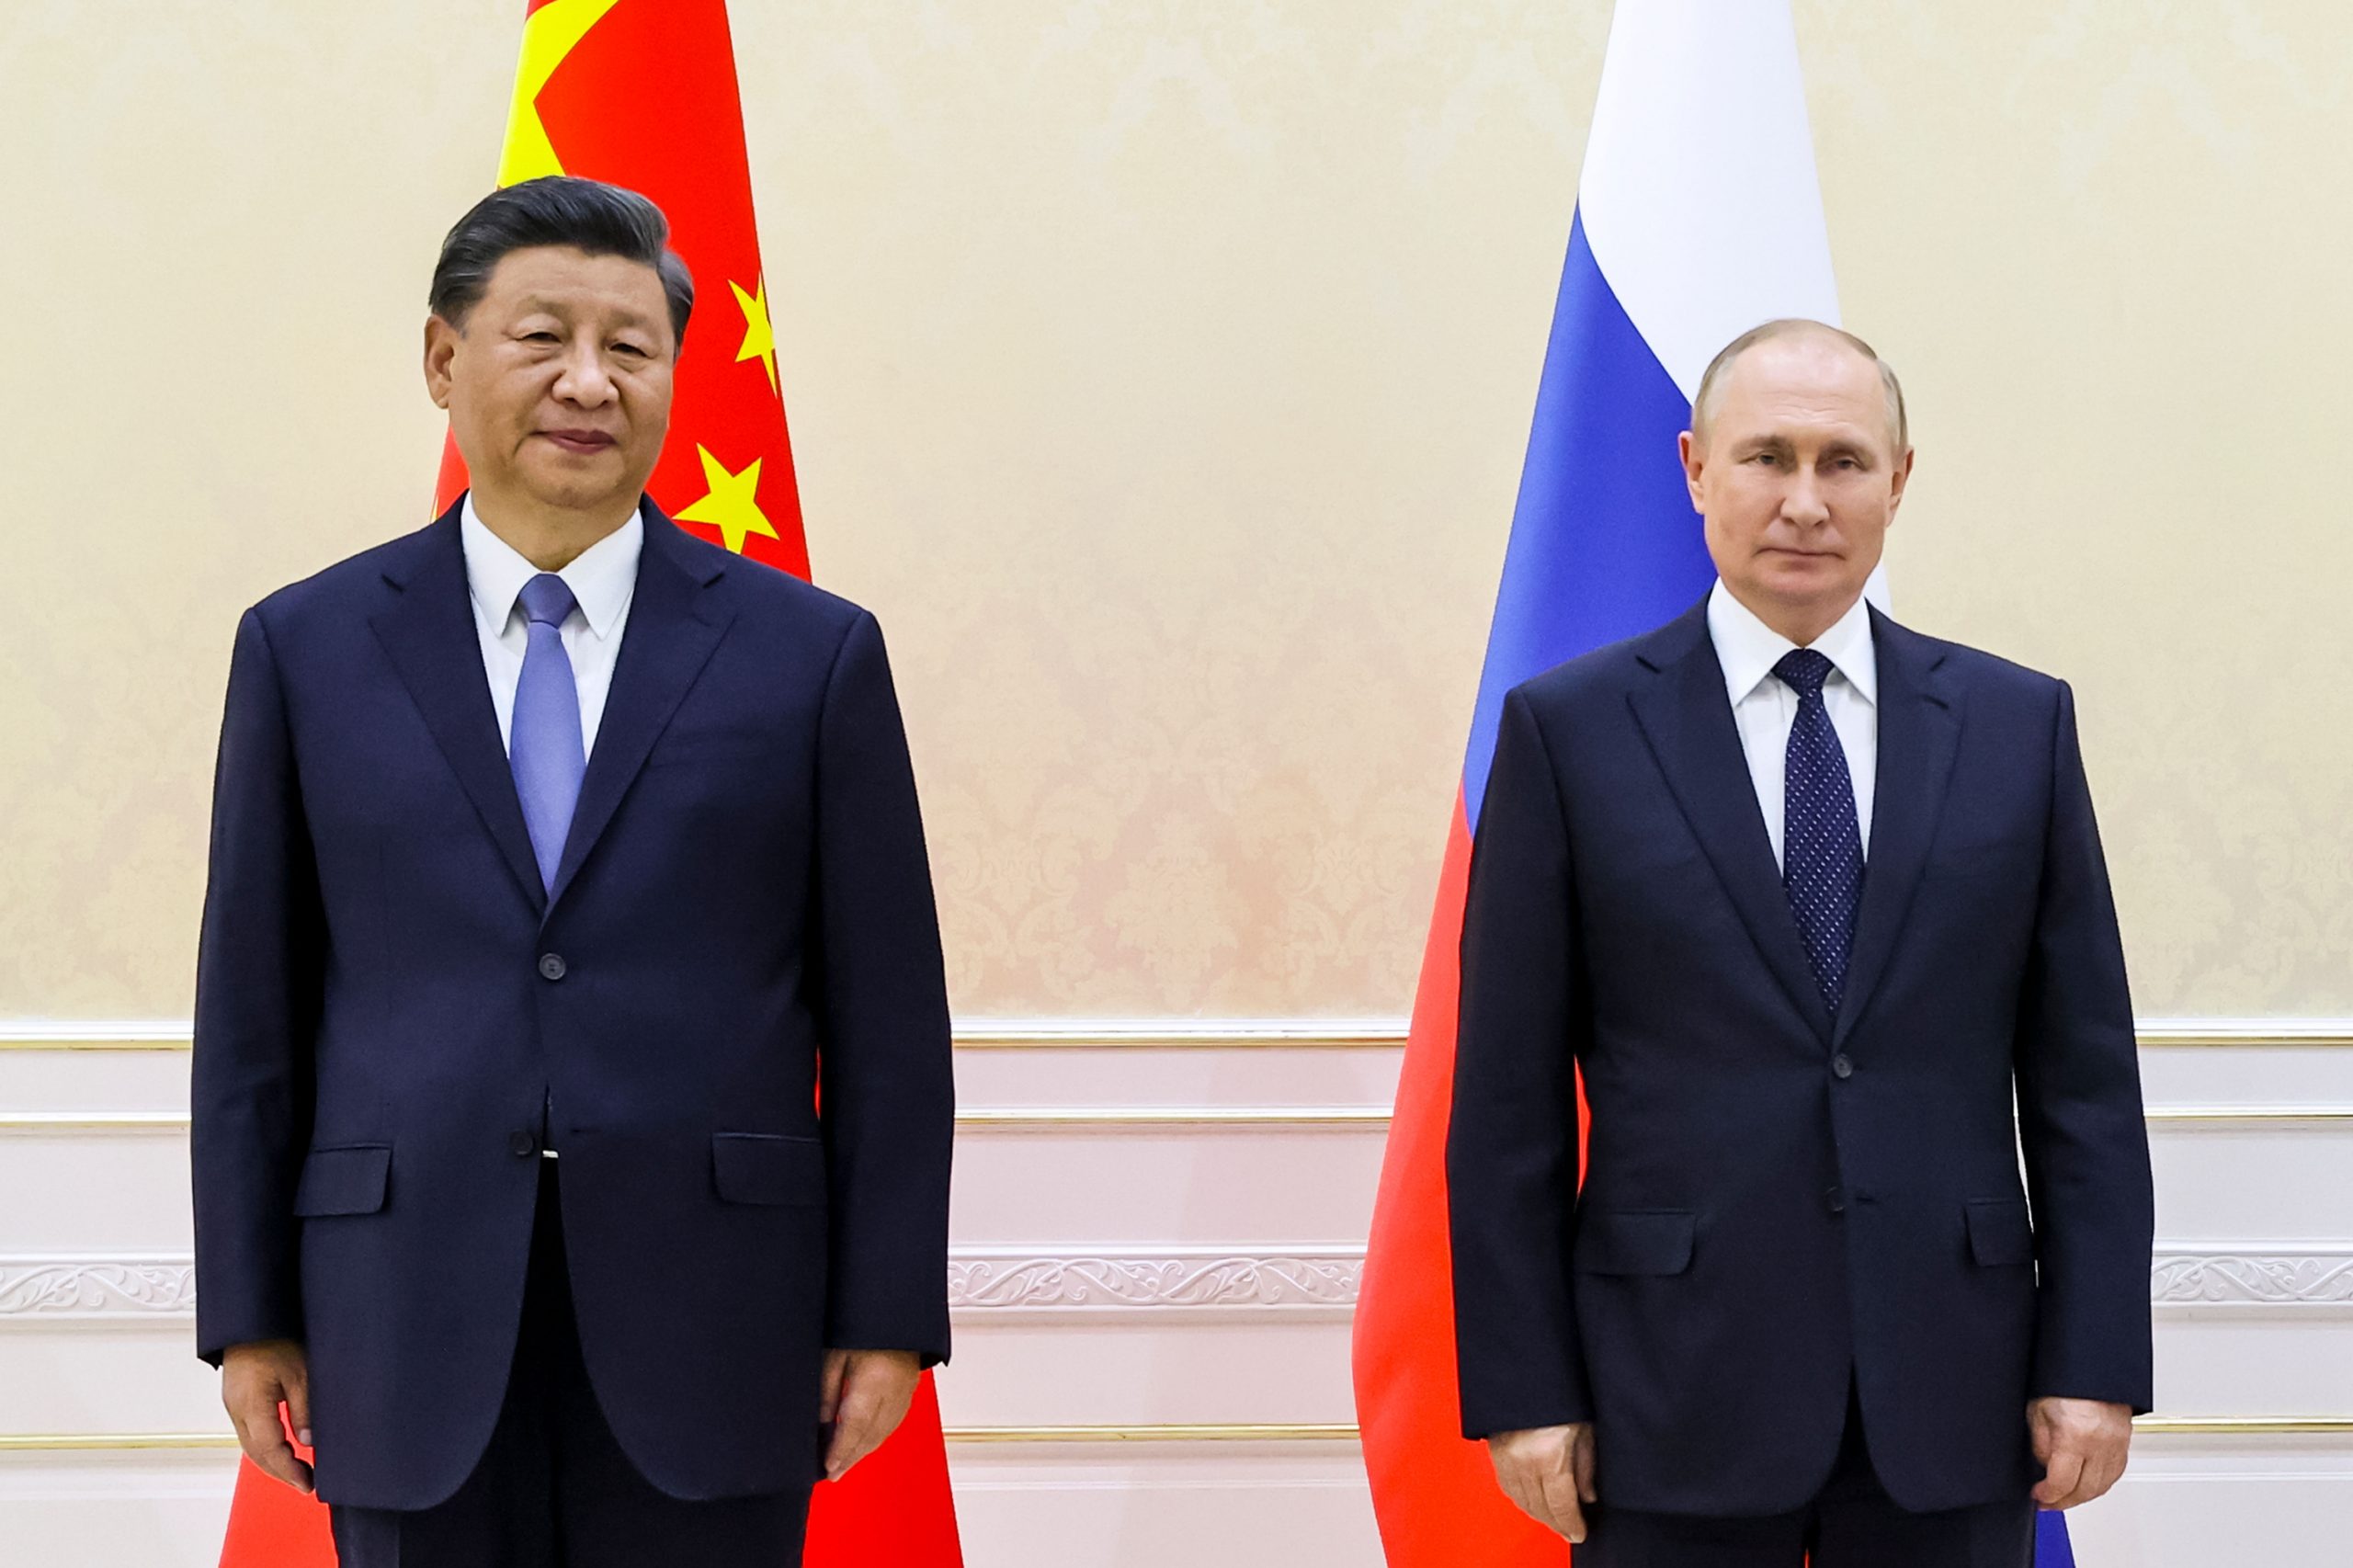 SCO Summit 2022: 3 key takeaways from China-Russia talks